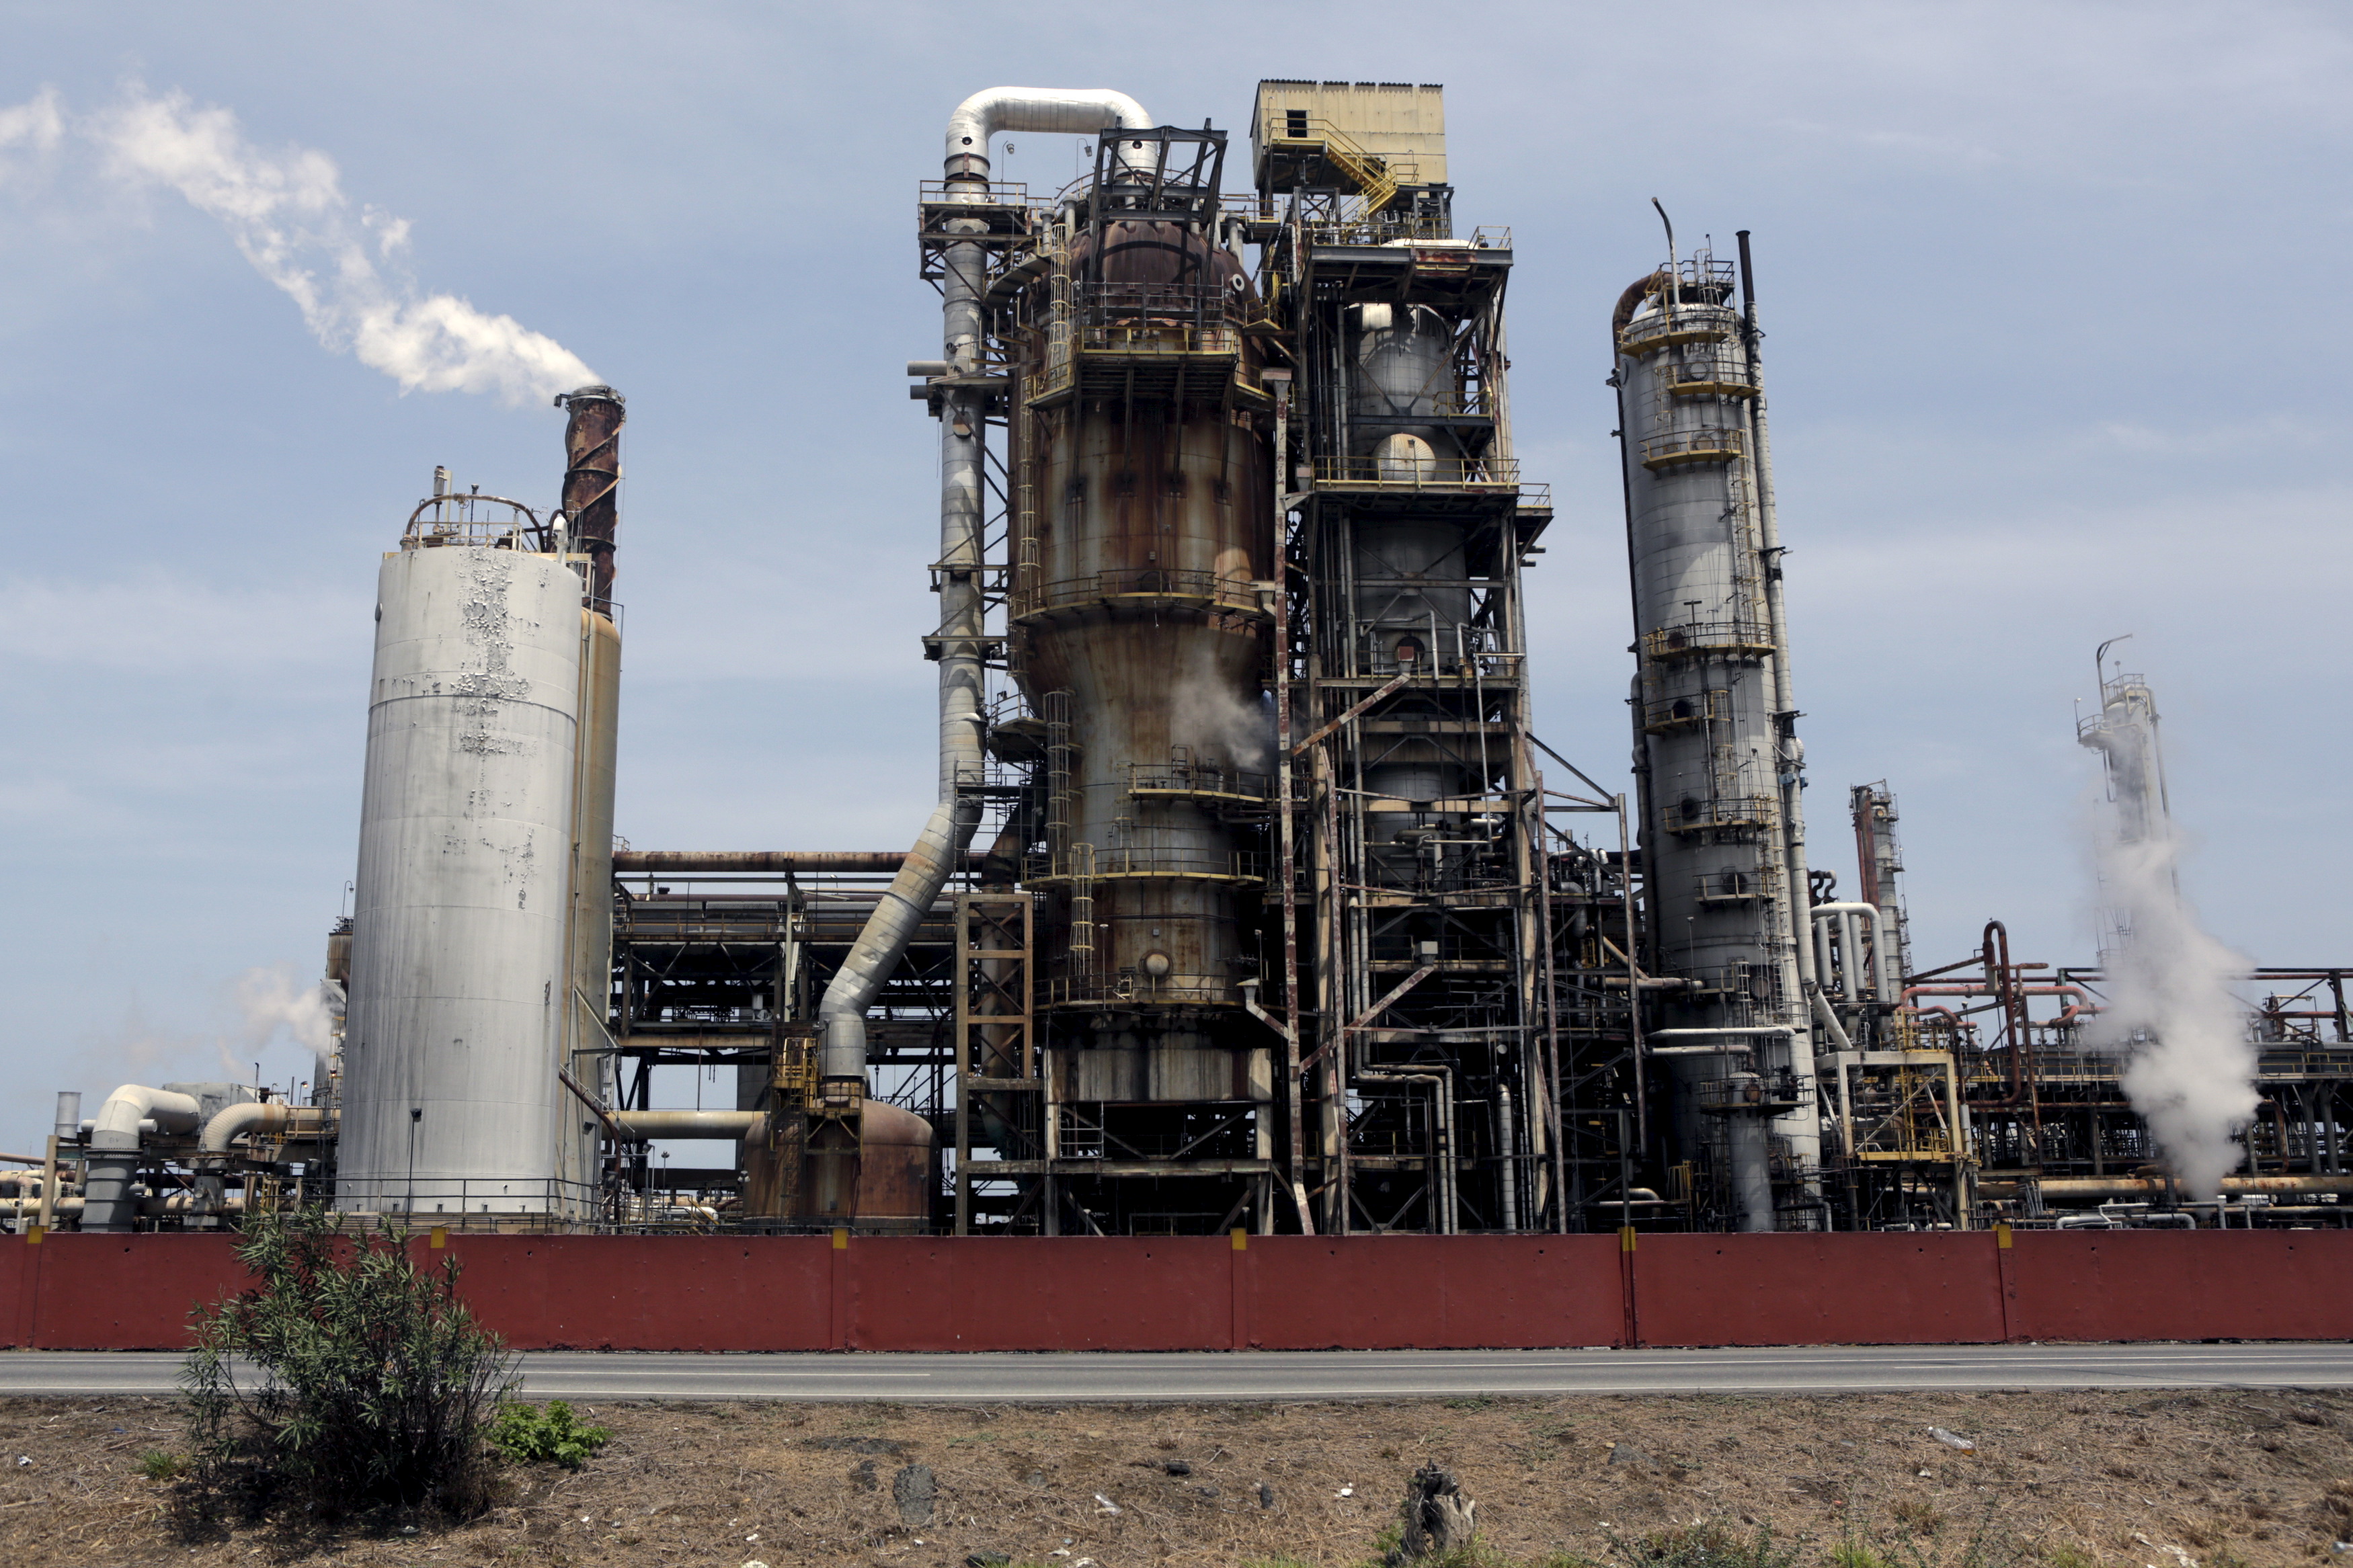 Régimen de Maduro promete arranque de la refinería El Palito durante “las próximas horas”